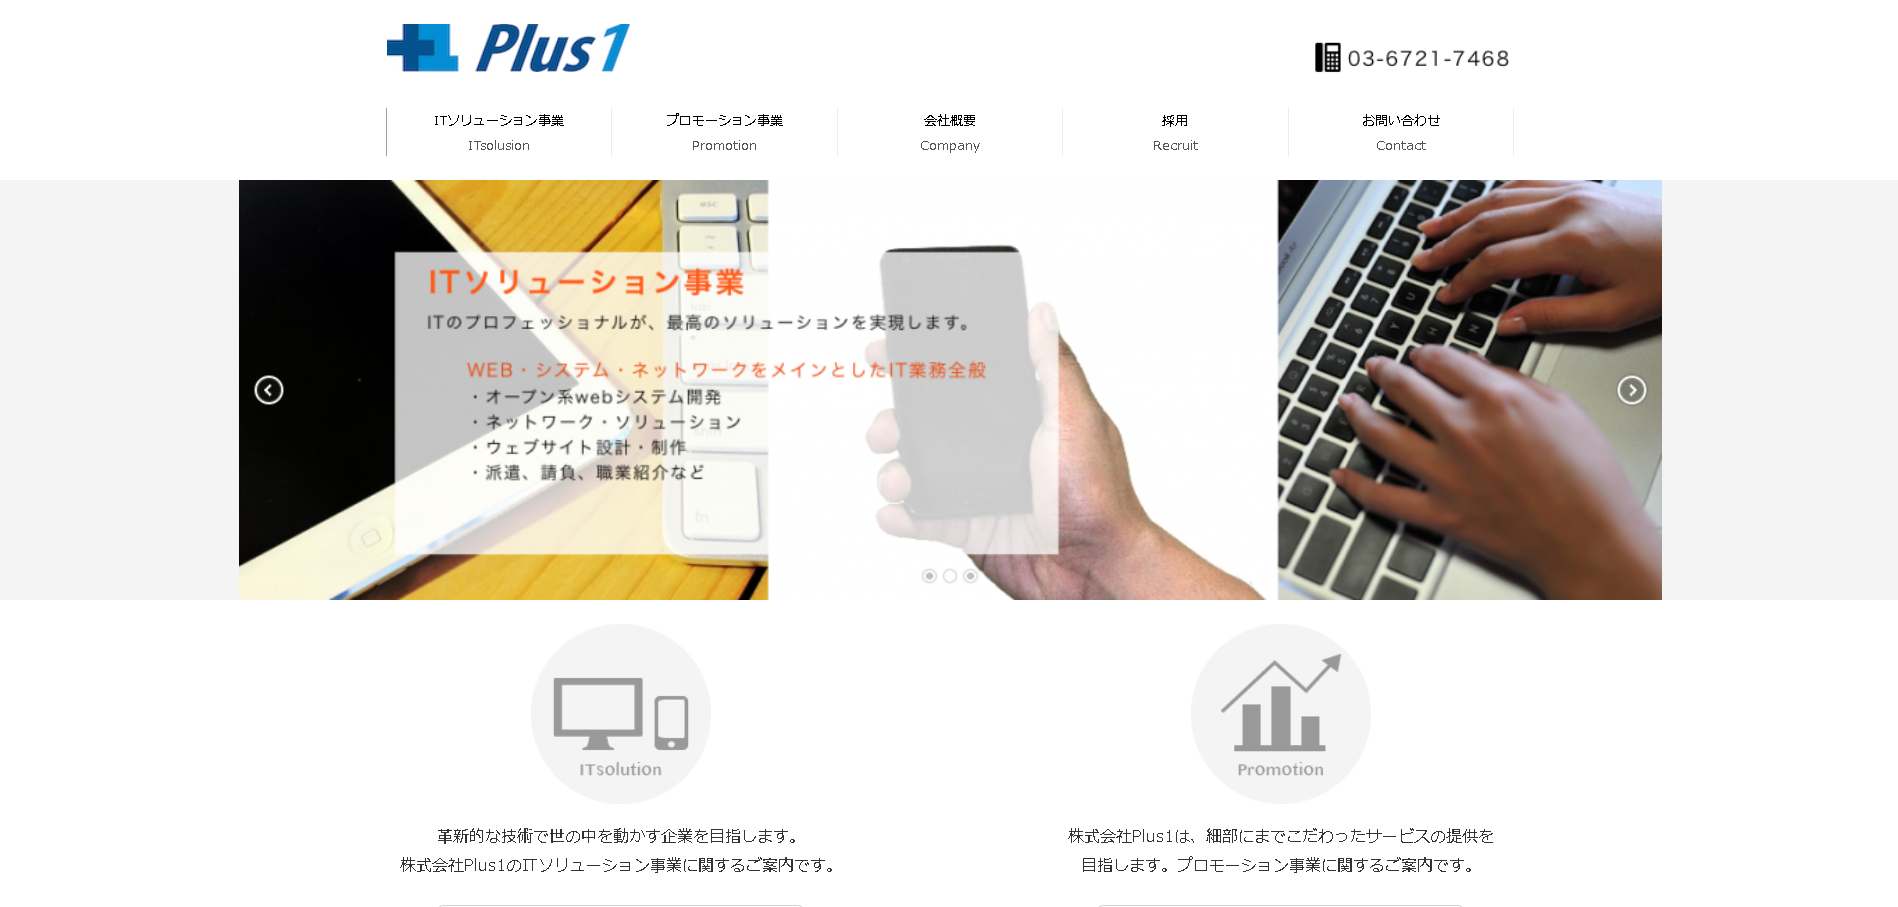 株式会社Plus1の株式会社Plus1サービス